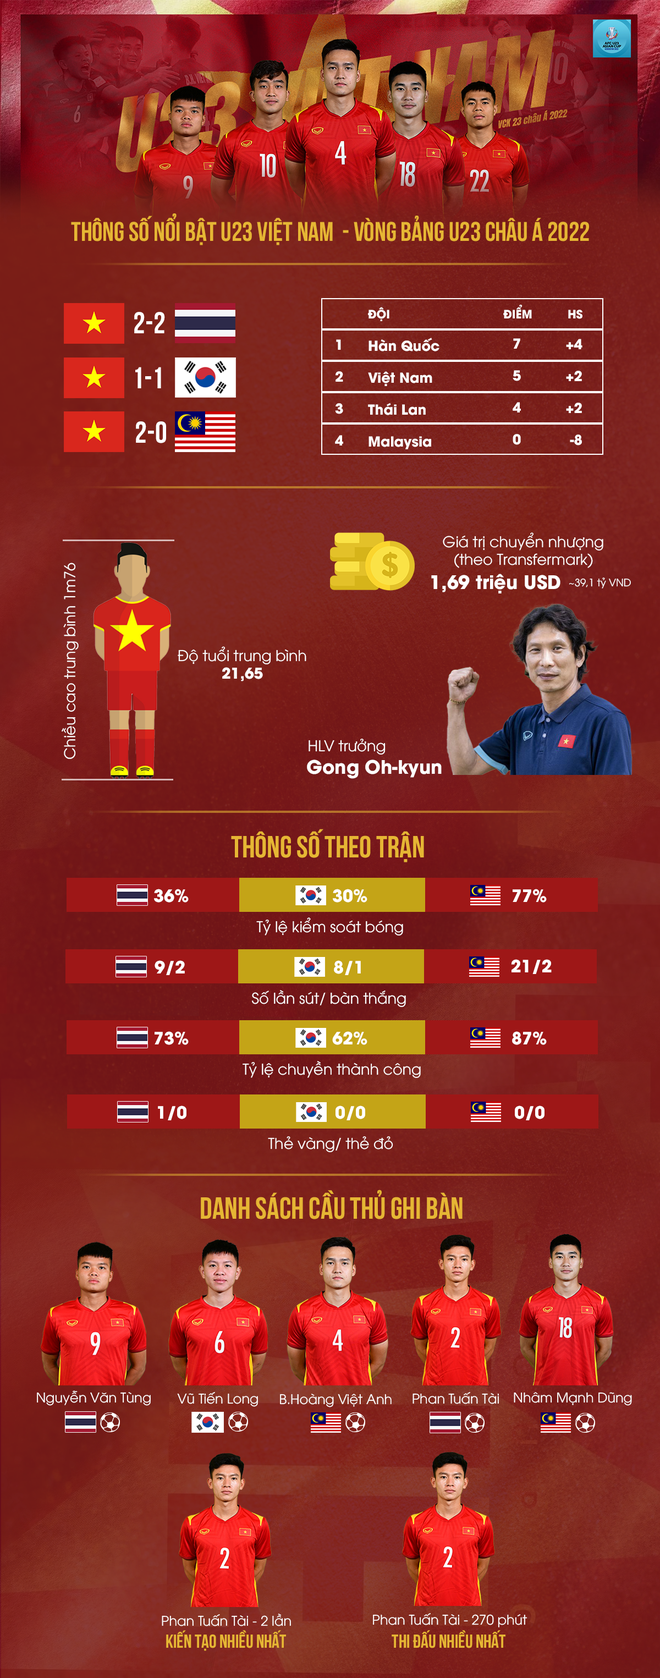 Infographic: Nhìn lại những con số đáng nhớ của U23 Việt Nam tại vòng bảng U23 châu Á 2022 - Ảnh 1.